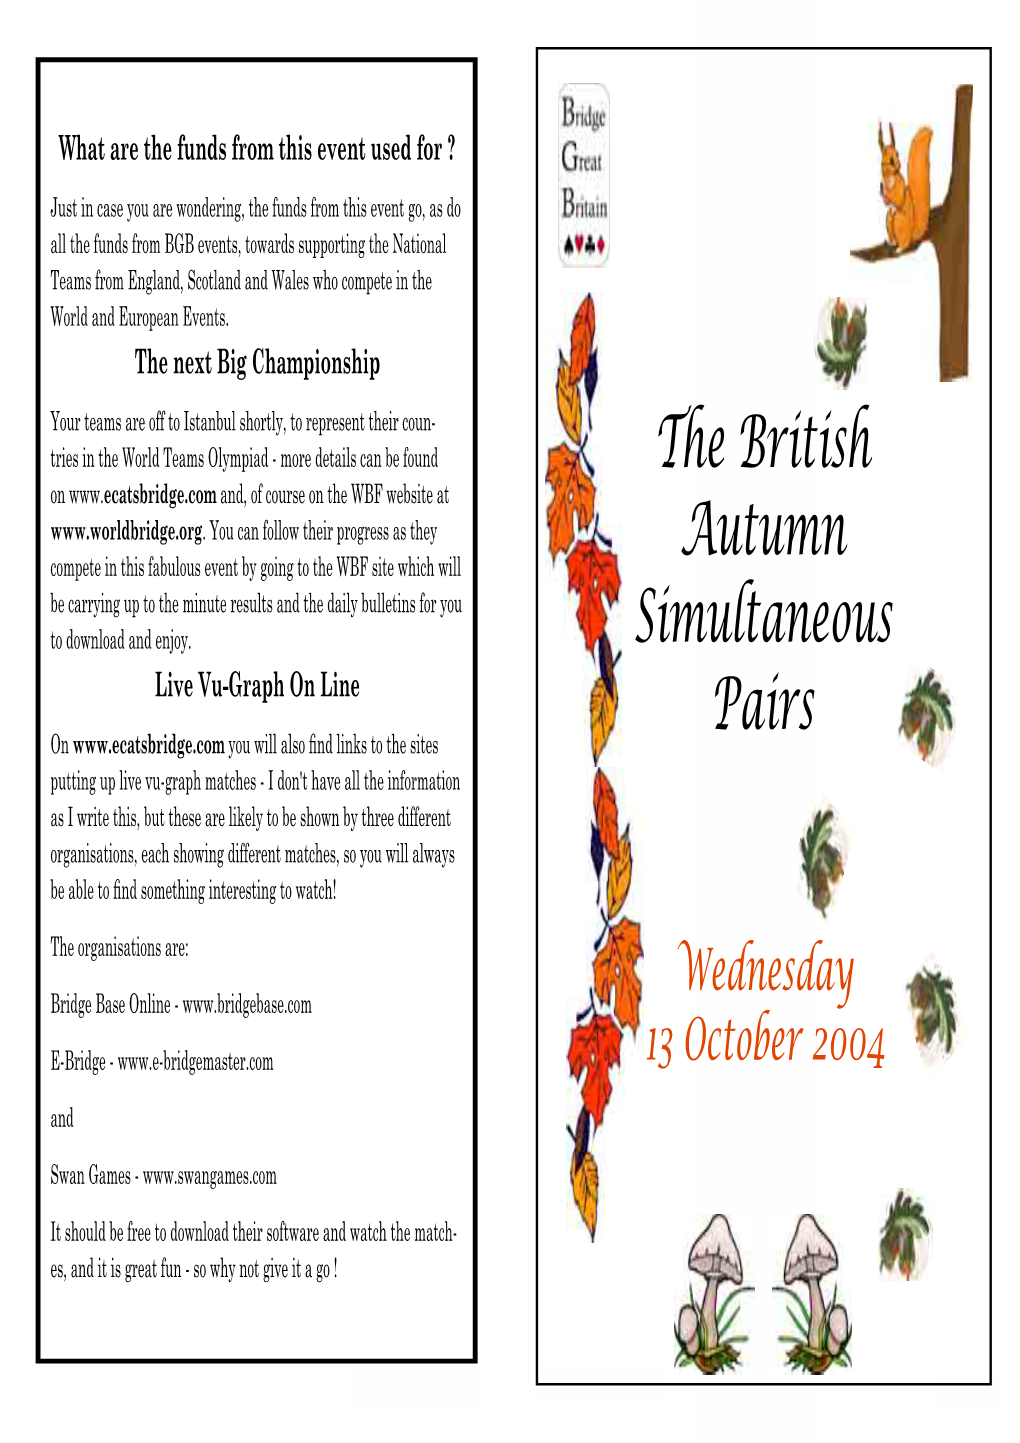 The British Autumn Simultaneous Pairs